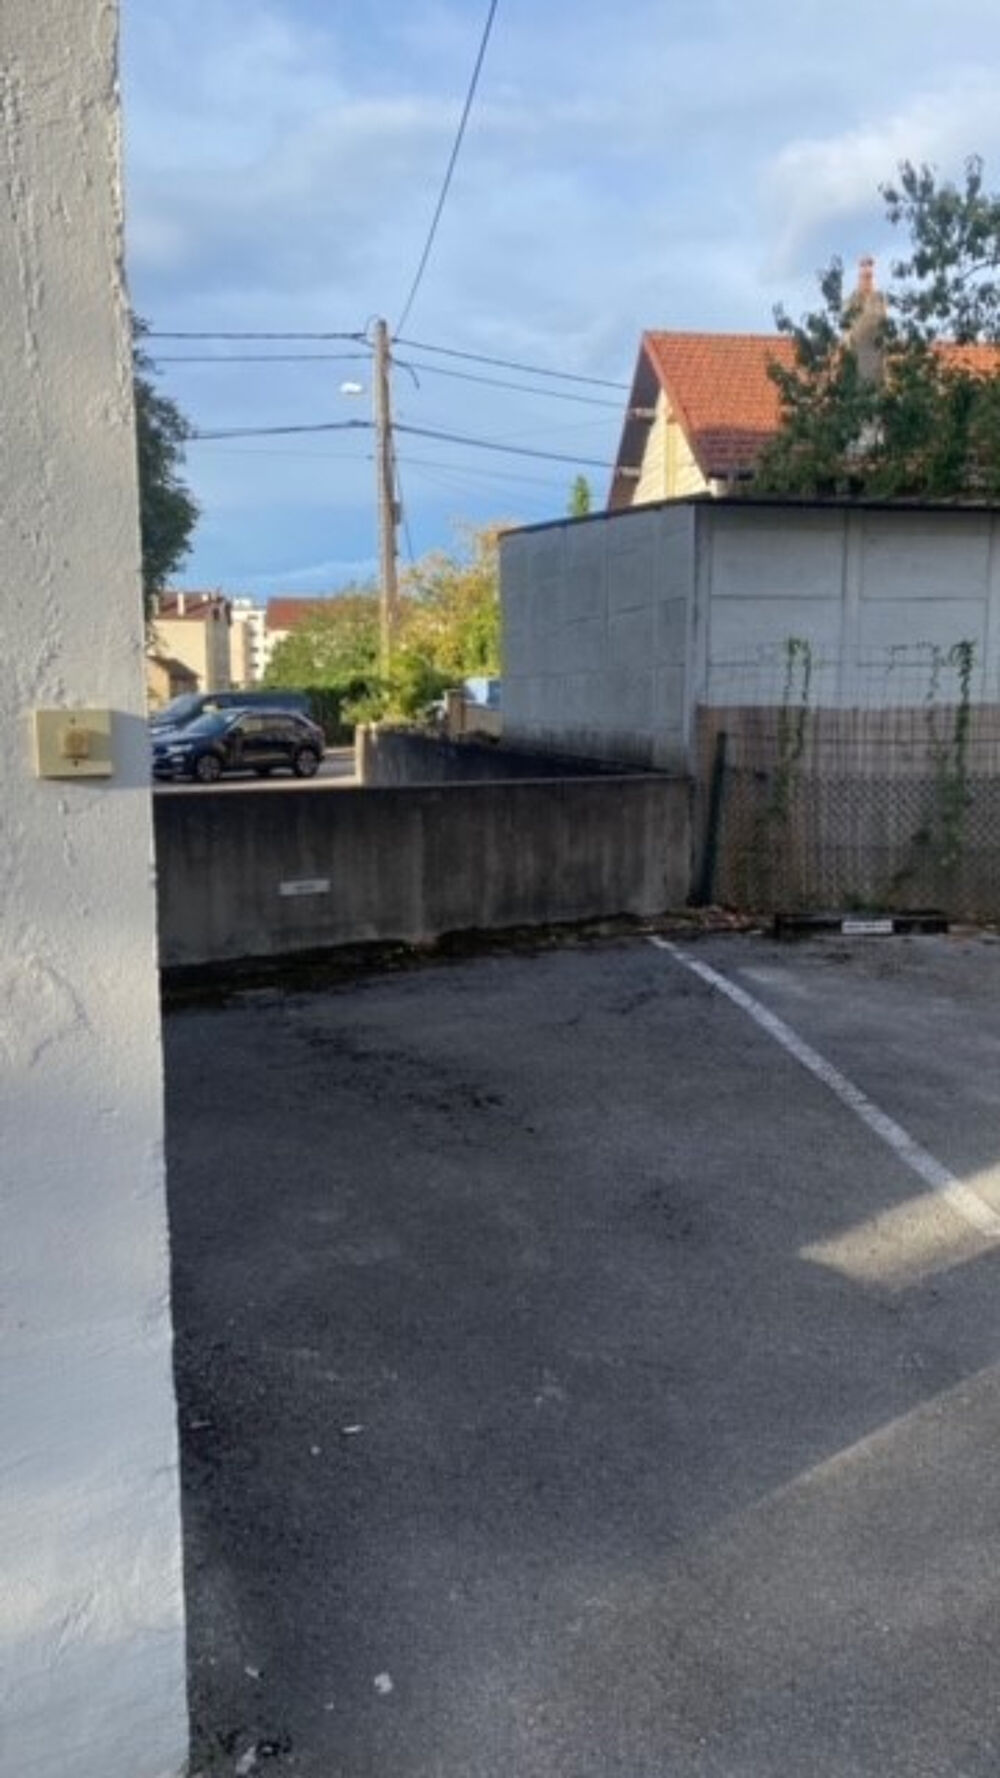 Location Parking/Garage Parking / box Besancon